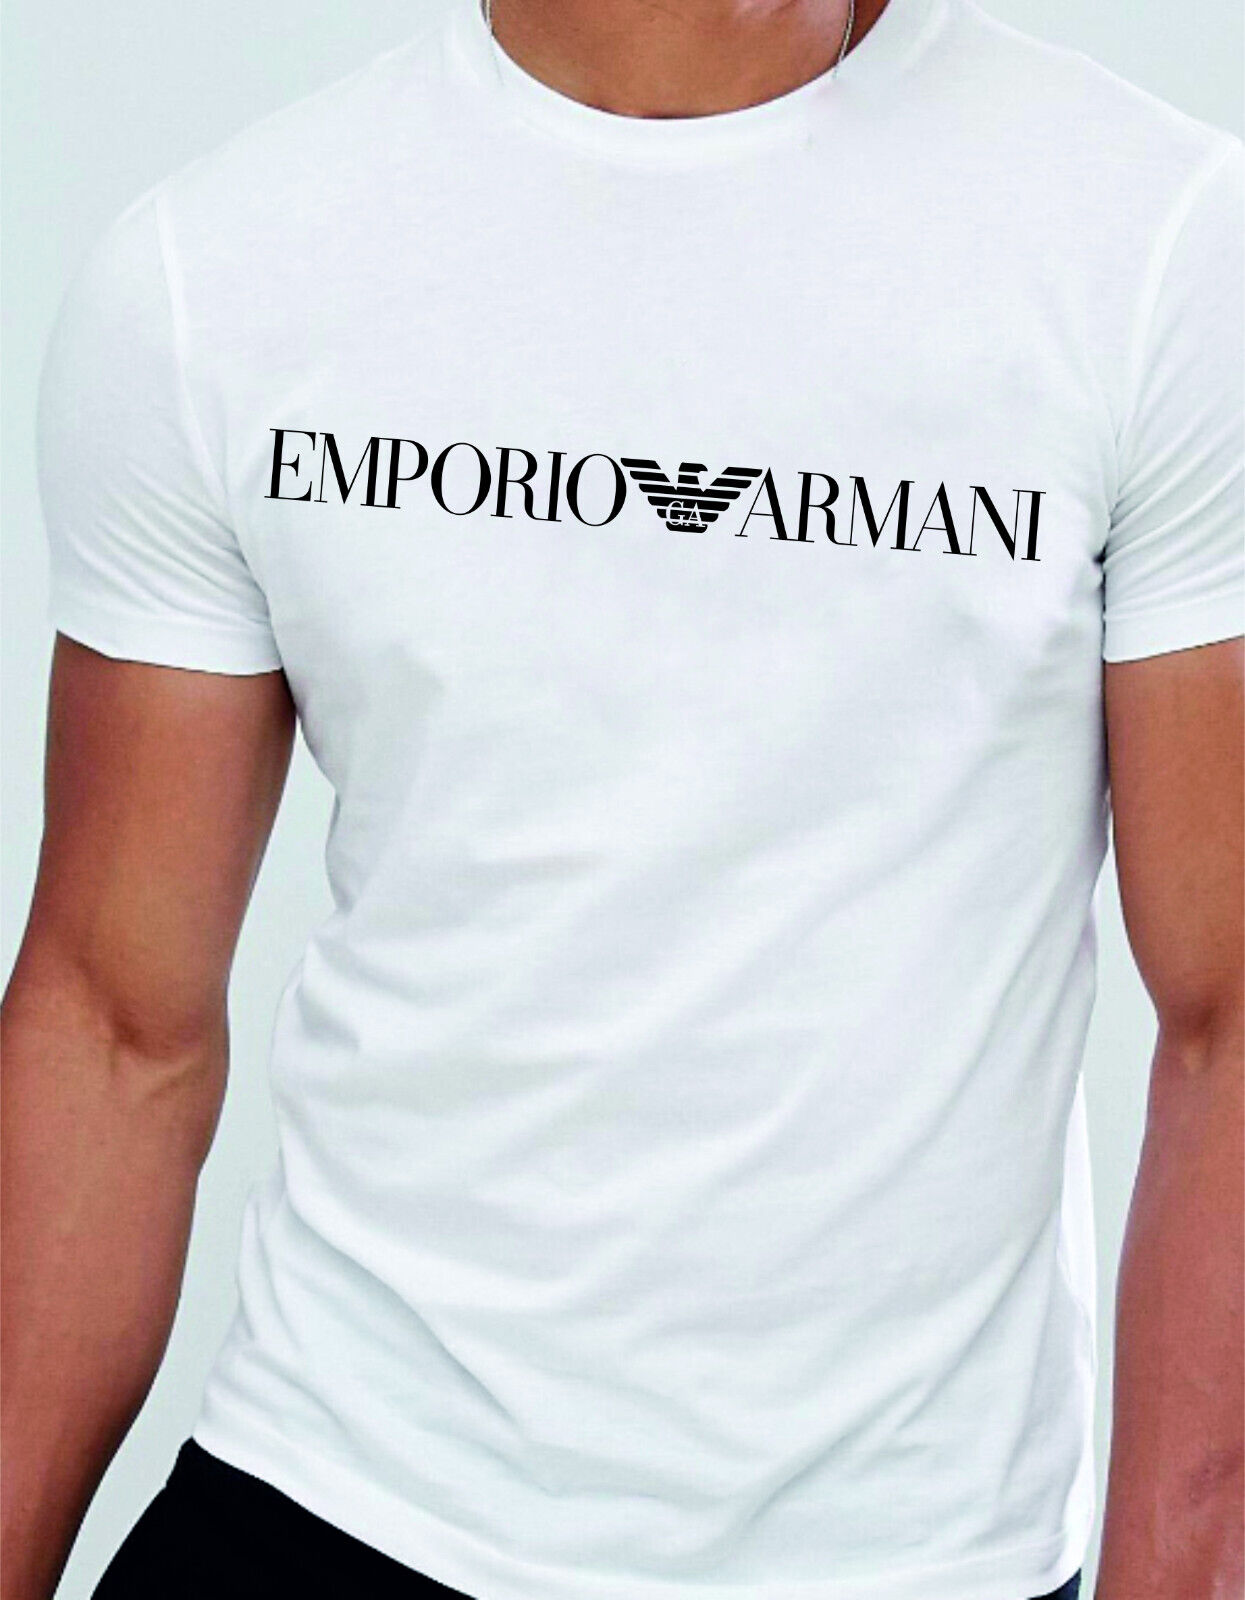 Emporio Armani White Men's cotton T-Shirt Round Neck,Size M*L*XL